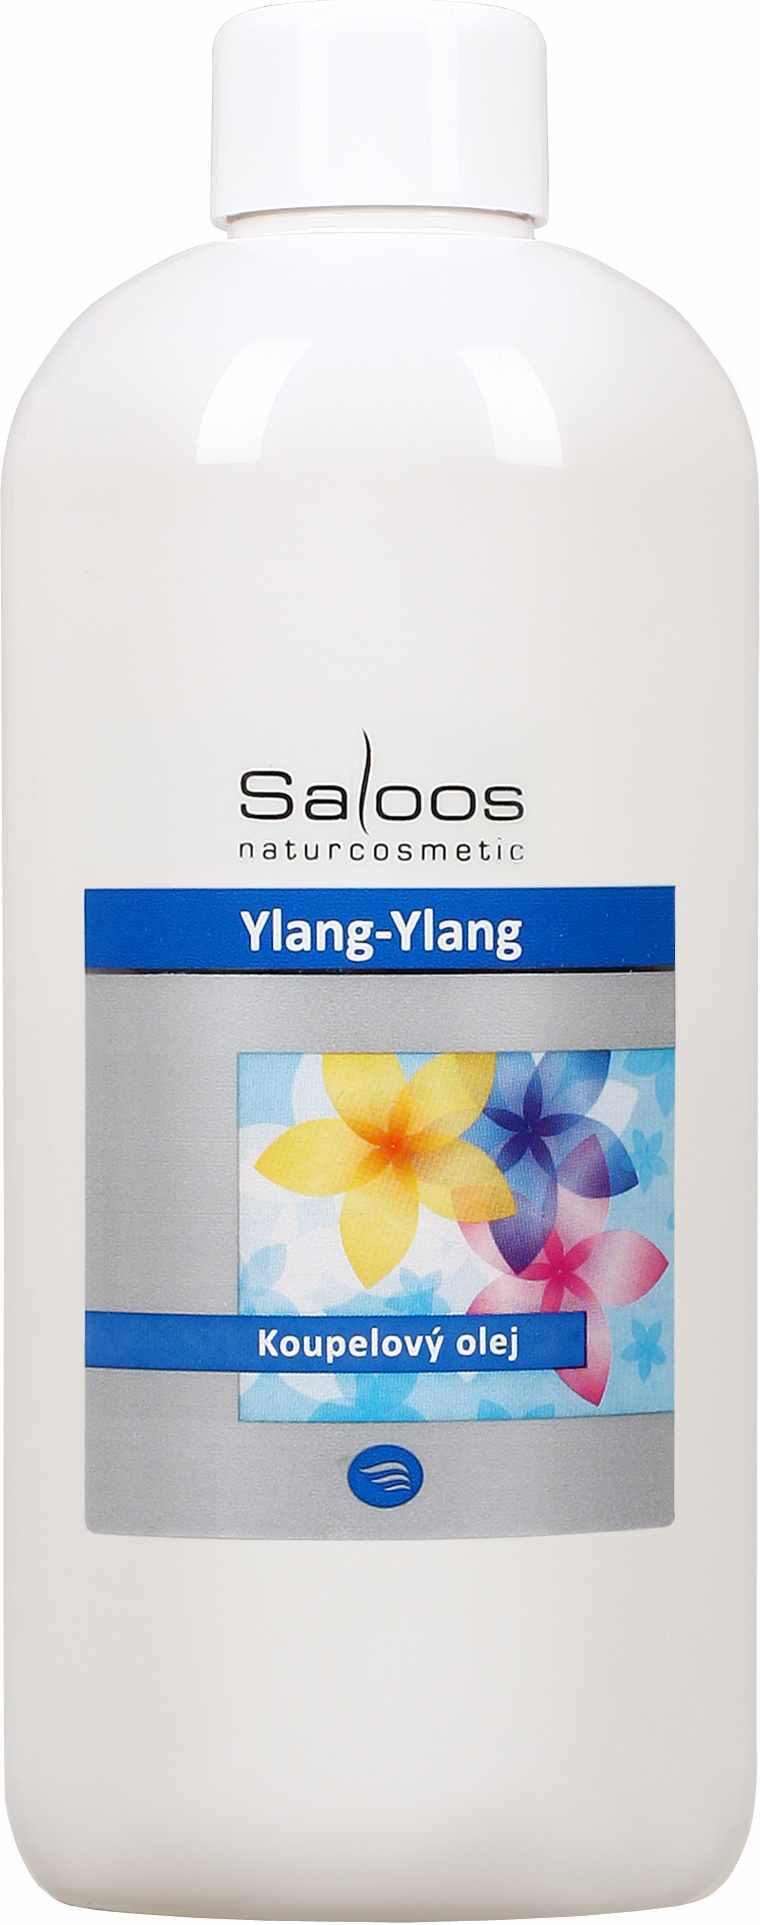 Saloos Ylang-ylang - koupelový olej Balení: 500 ml